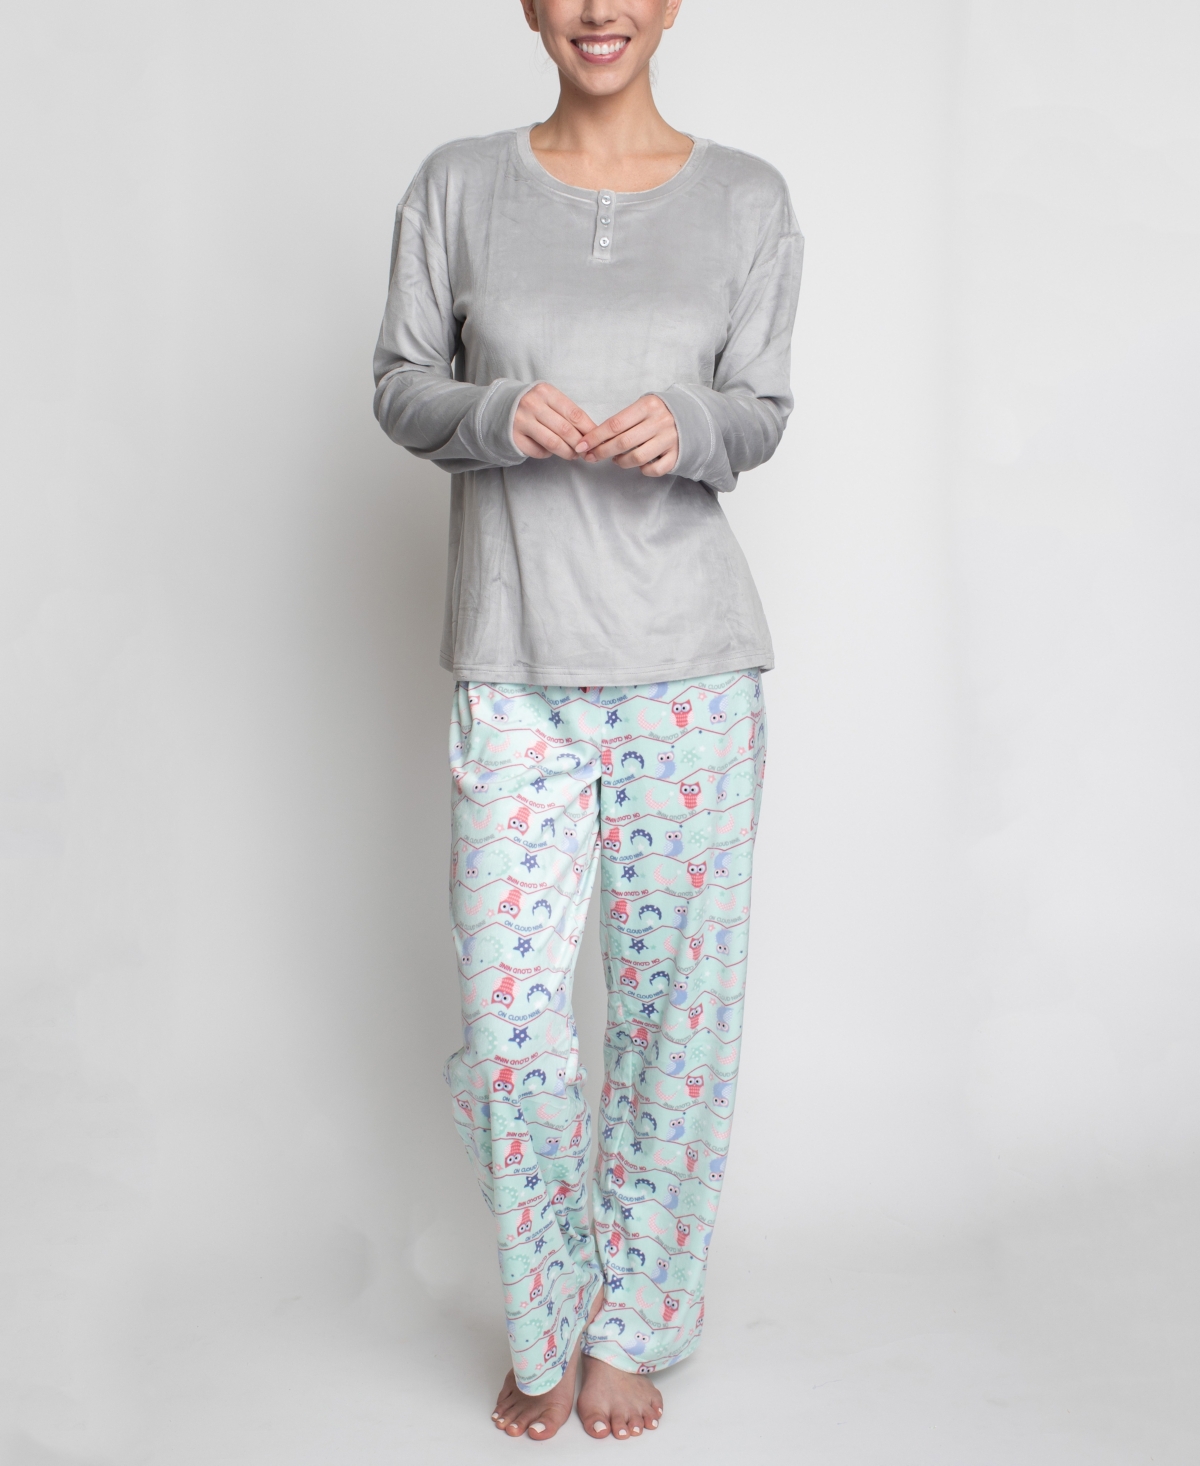 Hanes Women's Stretch Fleece Pajama Set, 2 Pieces In Gray